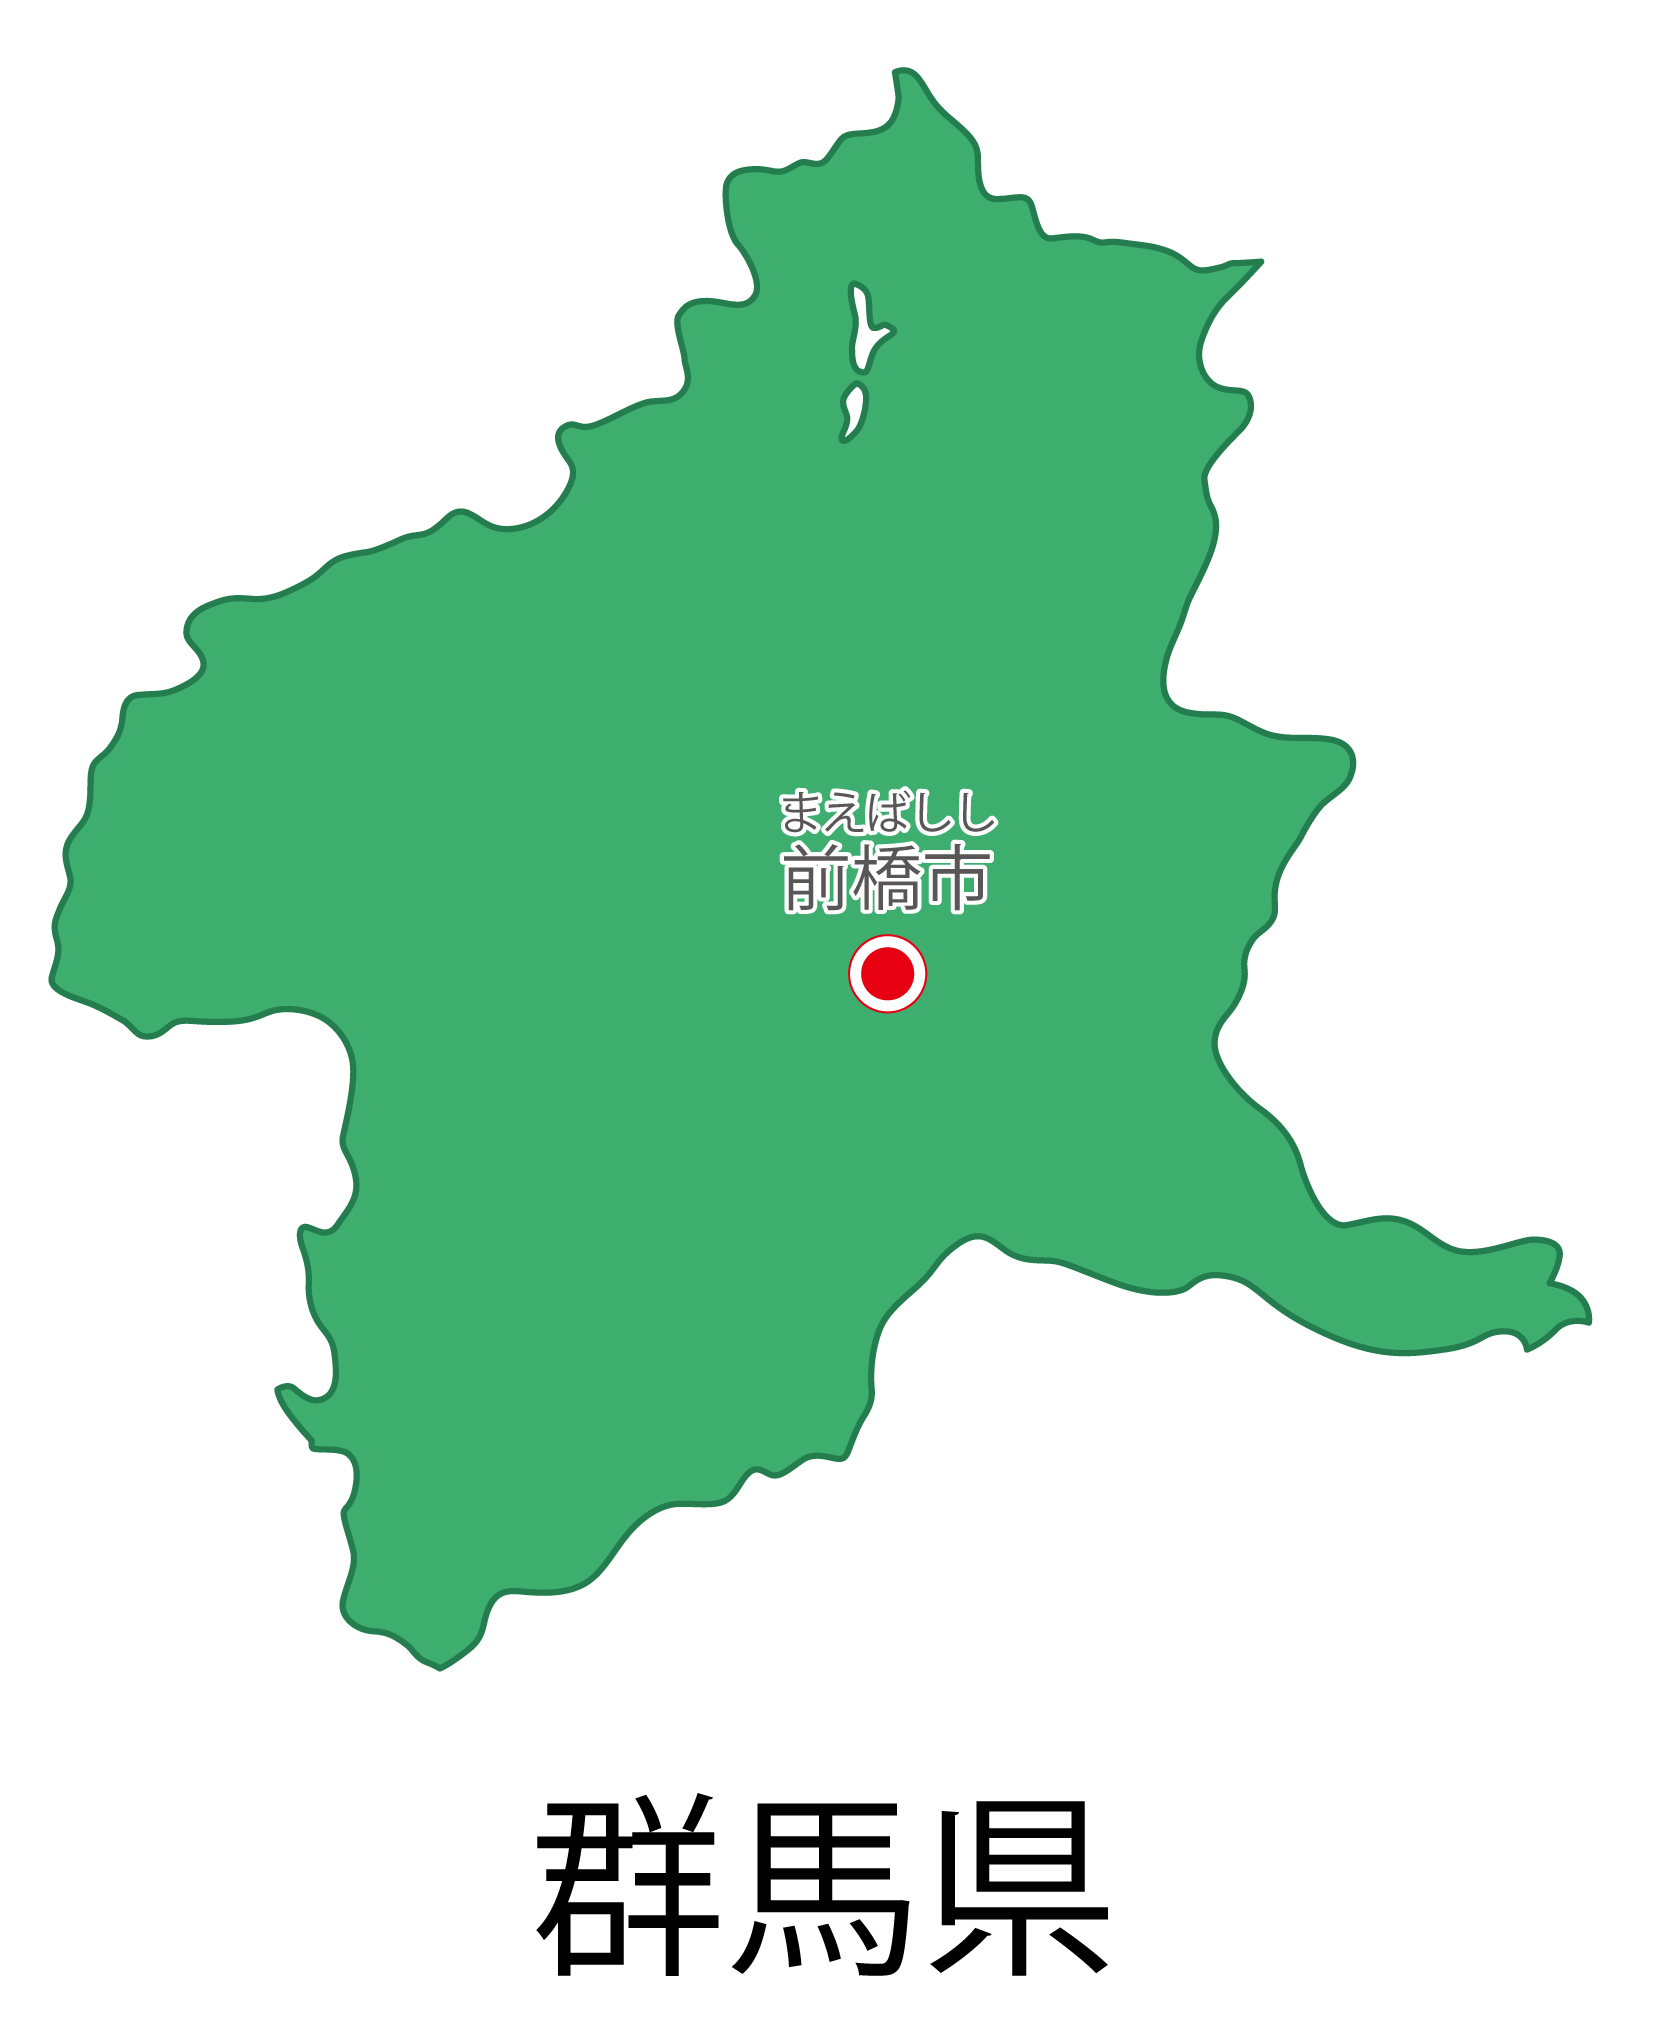 群馬県の地図イラスト フリー素材 を無料ダウンロード